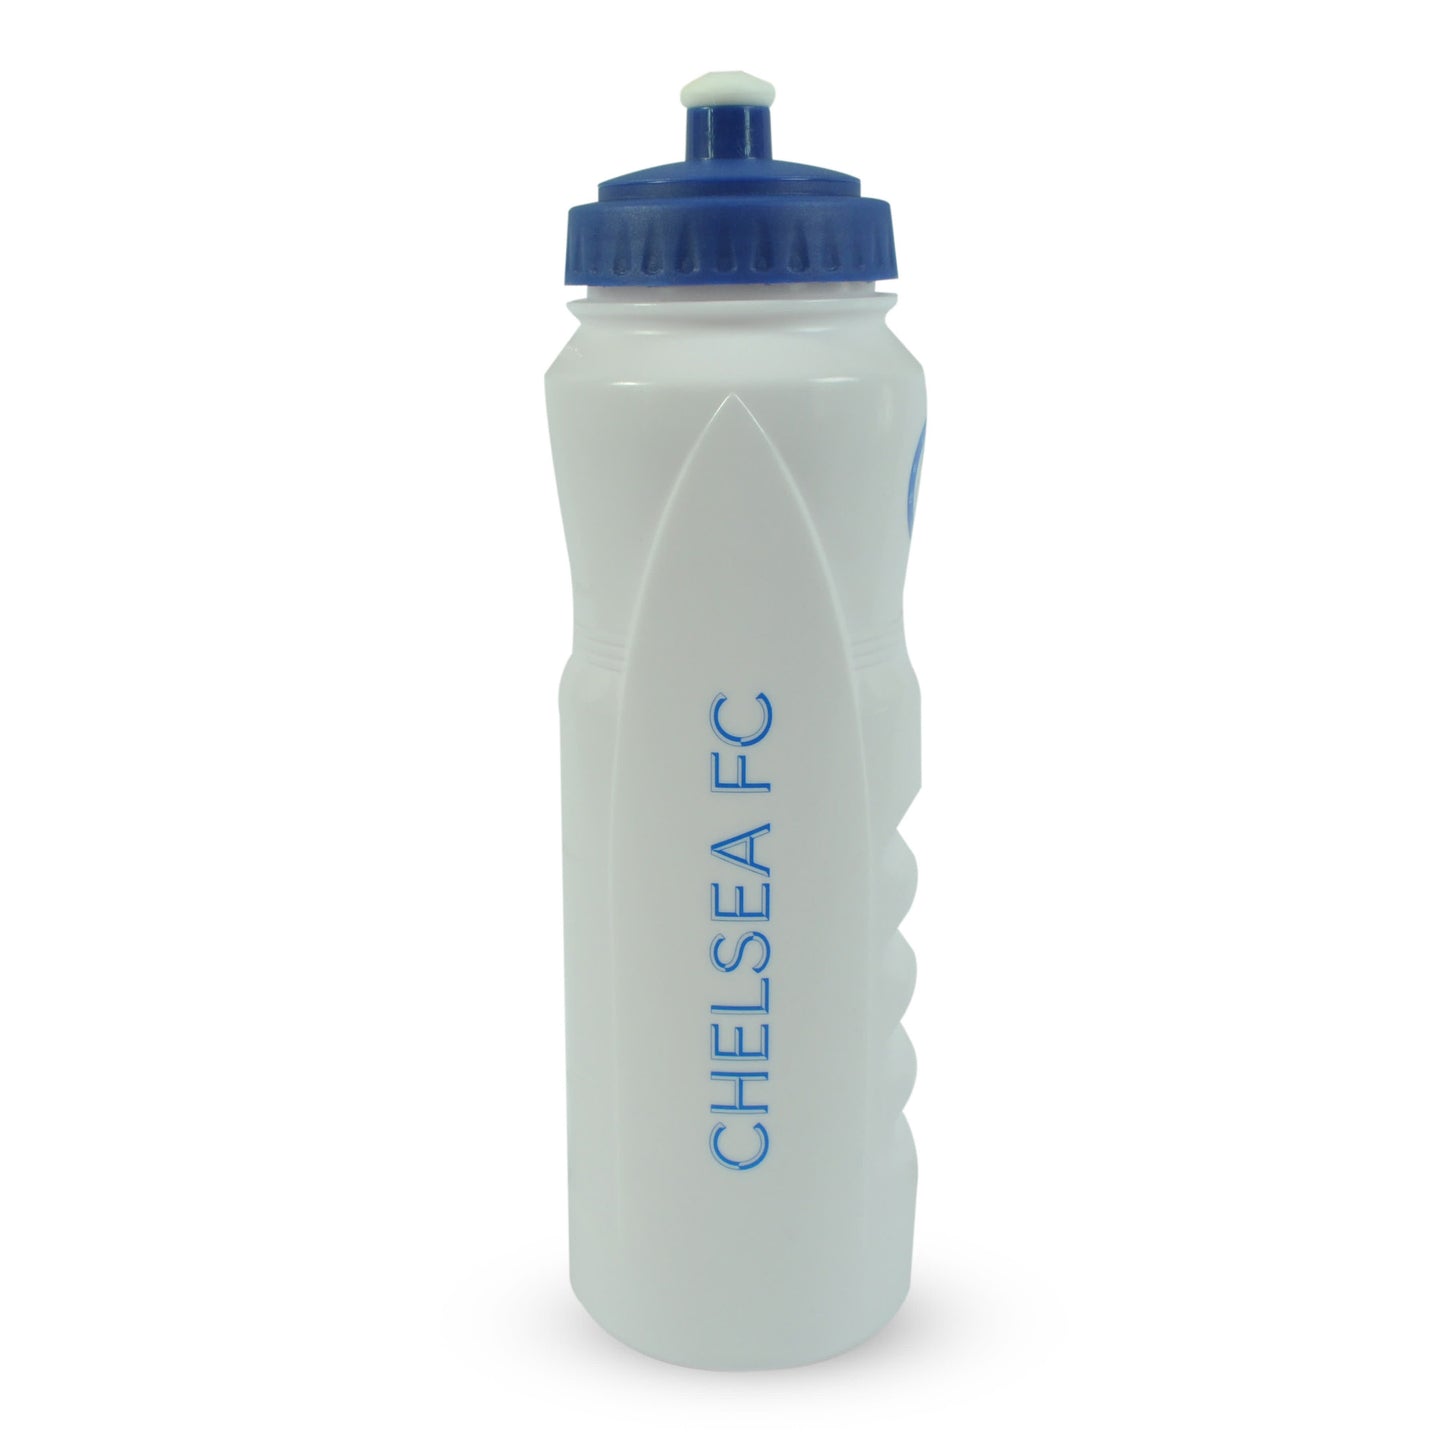 Chelsea 1000ml Plastic Sports Water Bottle